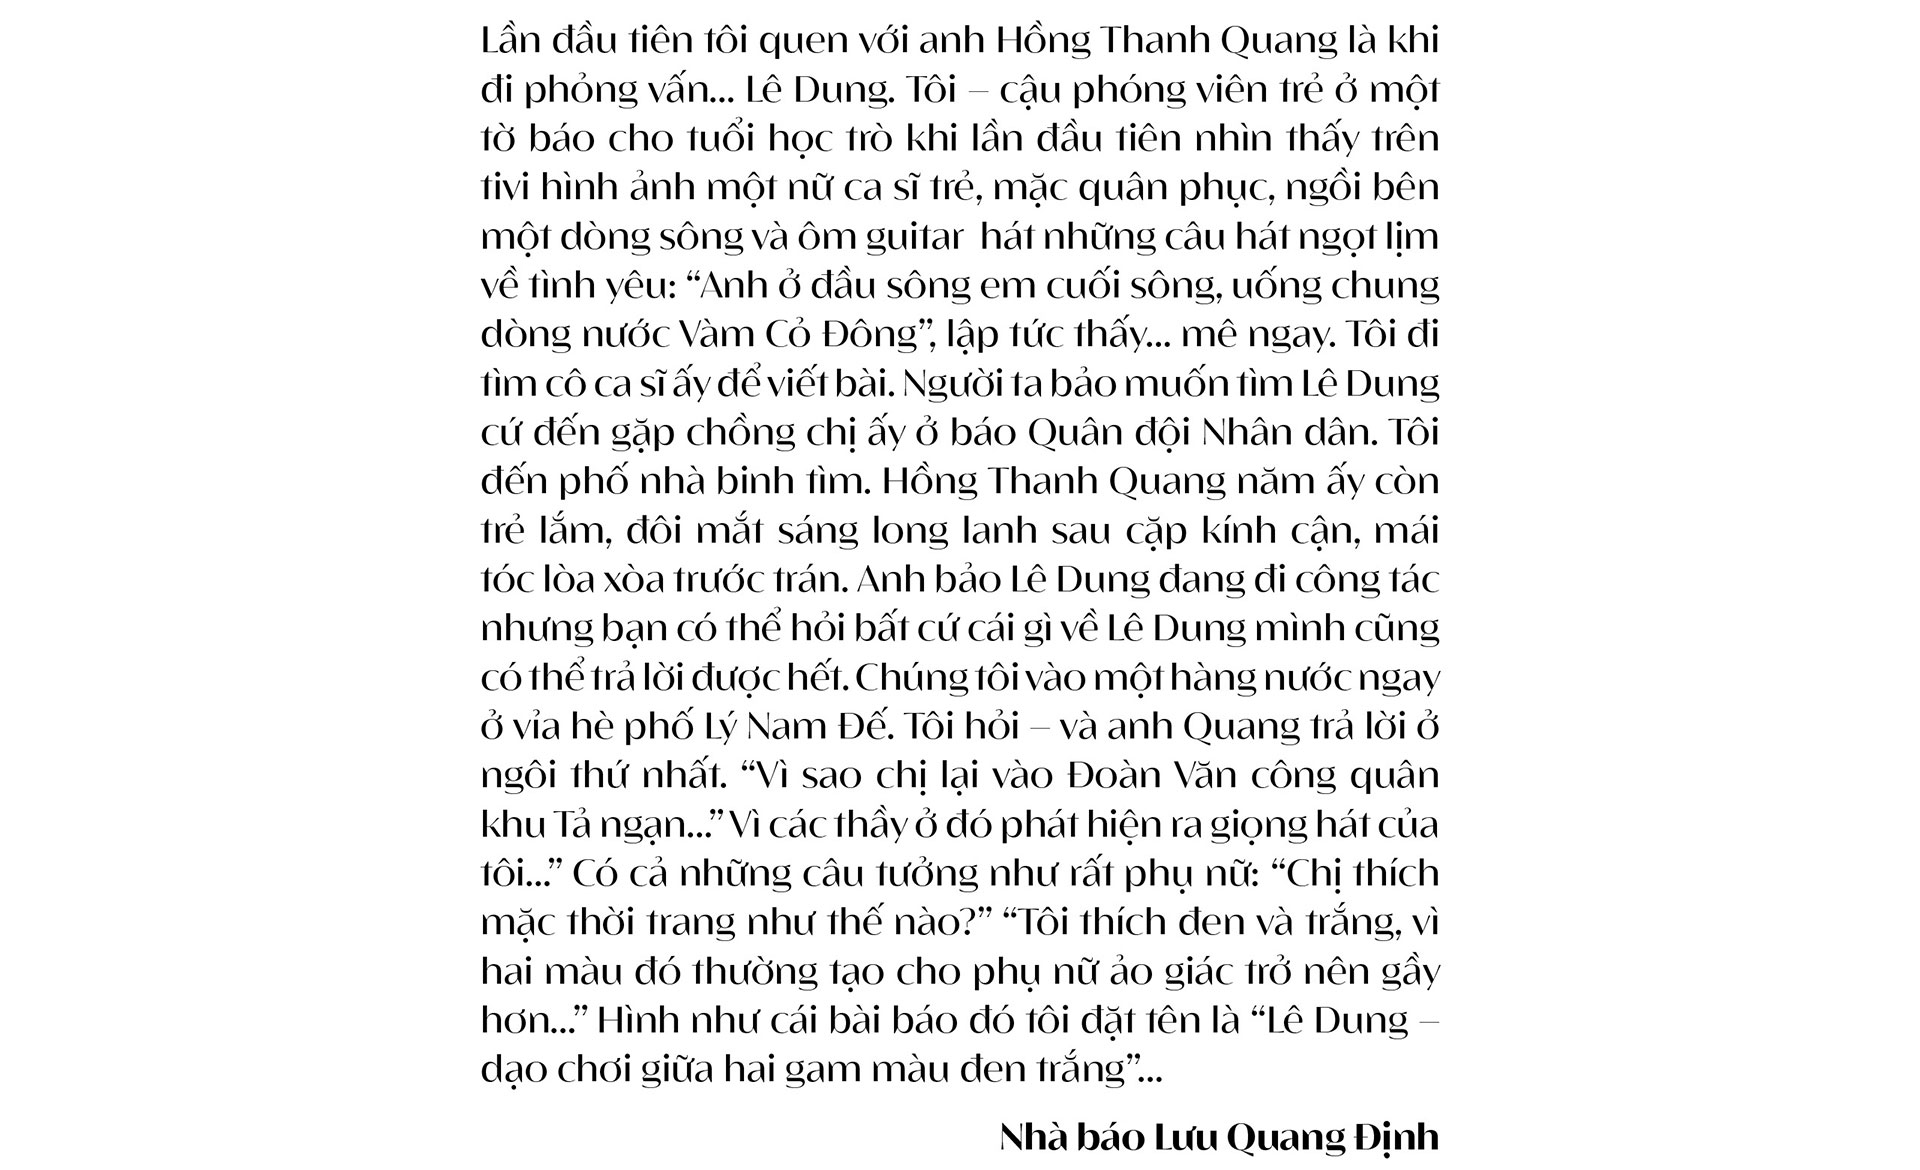 Trò chuyện giữa nhà báo Lưu Quang Định và nhà thơ,  nhà báo Hồng Thanh Quang: Về Thơ, Tình yêu và Cuộc đời - Ảnh 5.